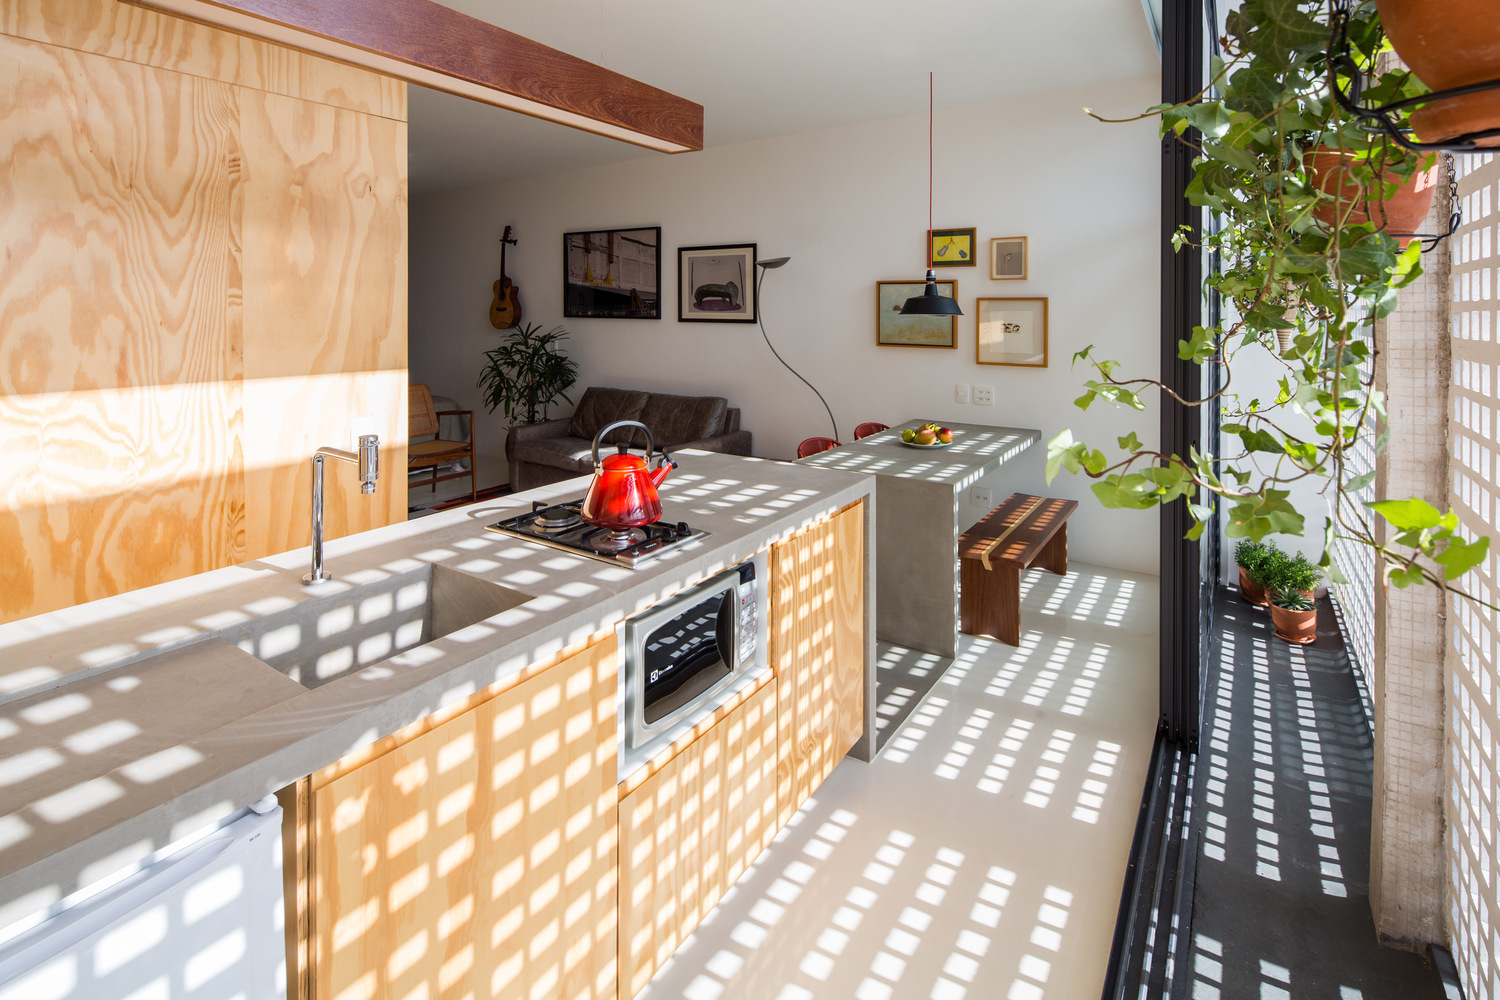 Hình ảnh một phòng bếp ngập tràn ánh sáng với tường chắn, mặt tủ bếp bằng gỗ, trên bếp đặt ấm đun nước màu đỏ